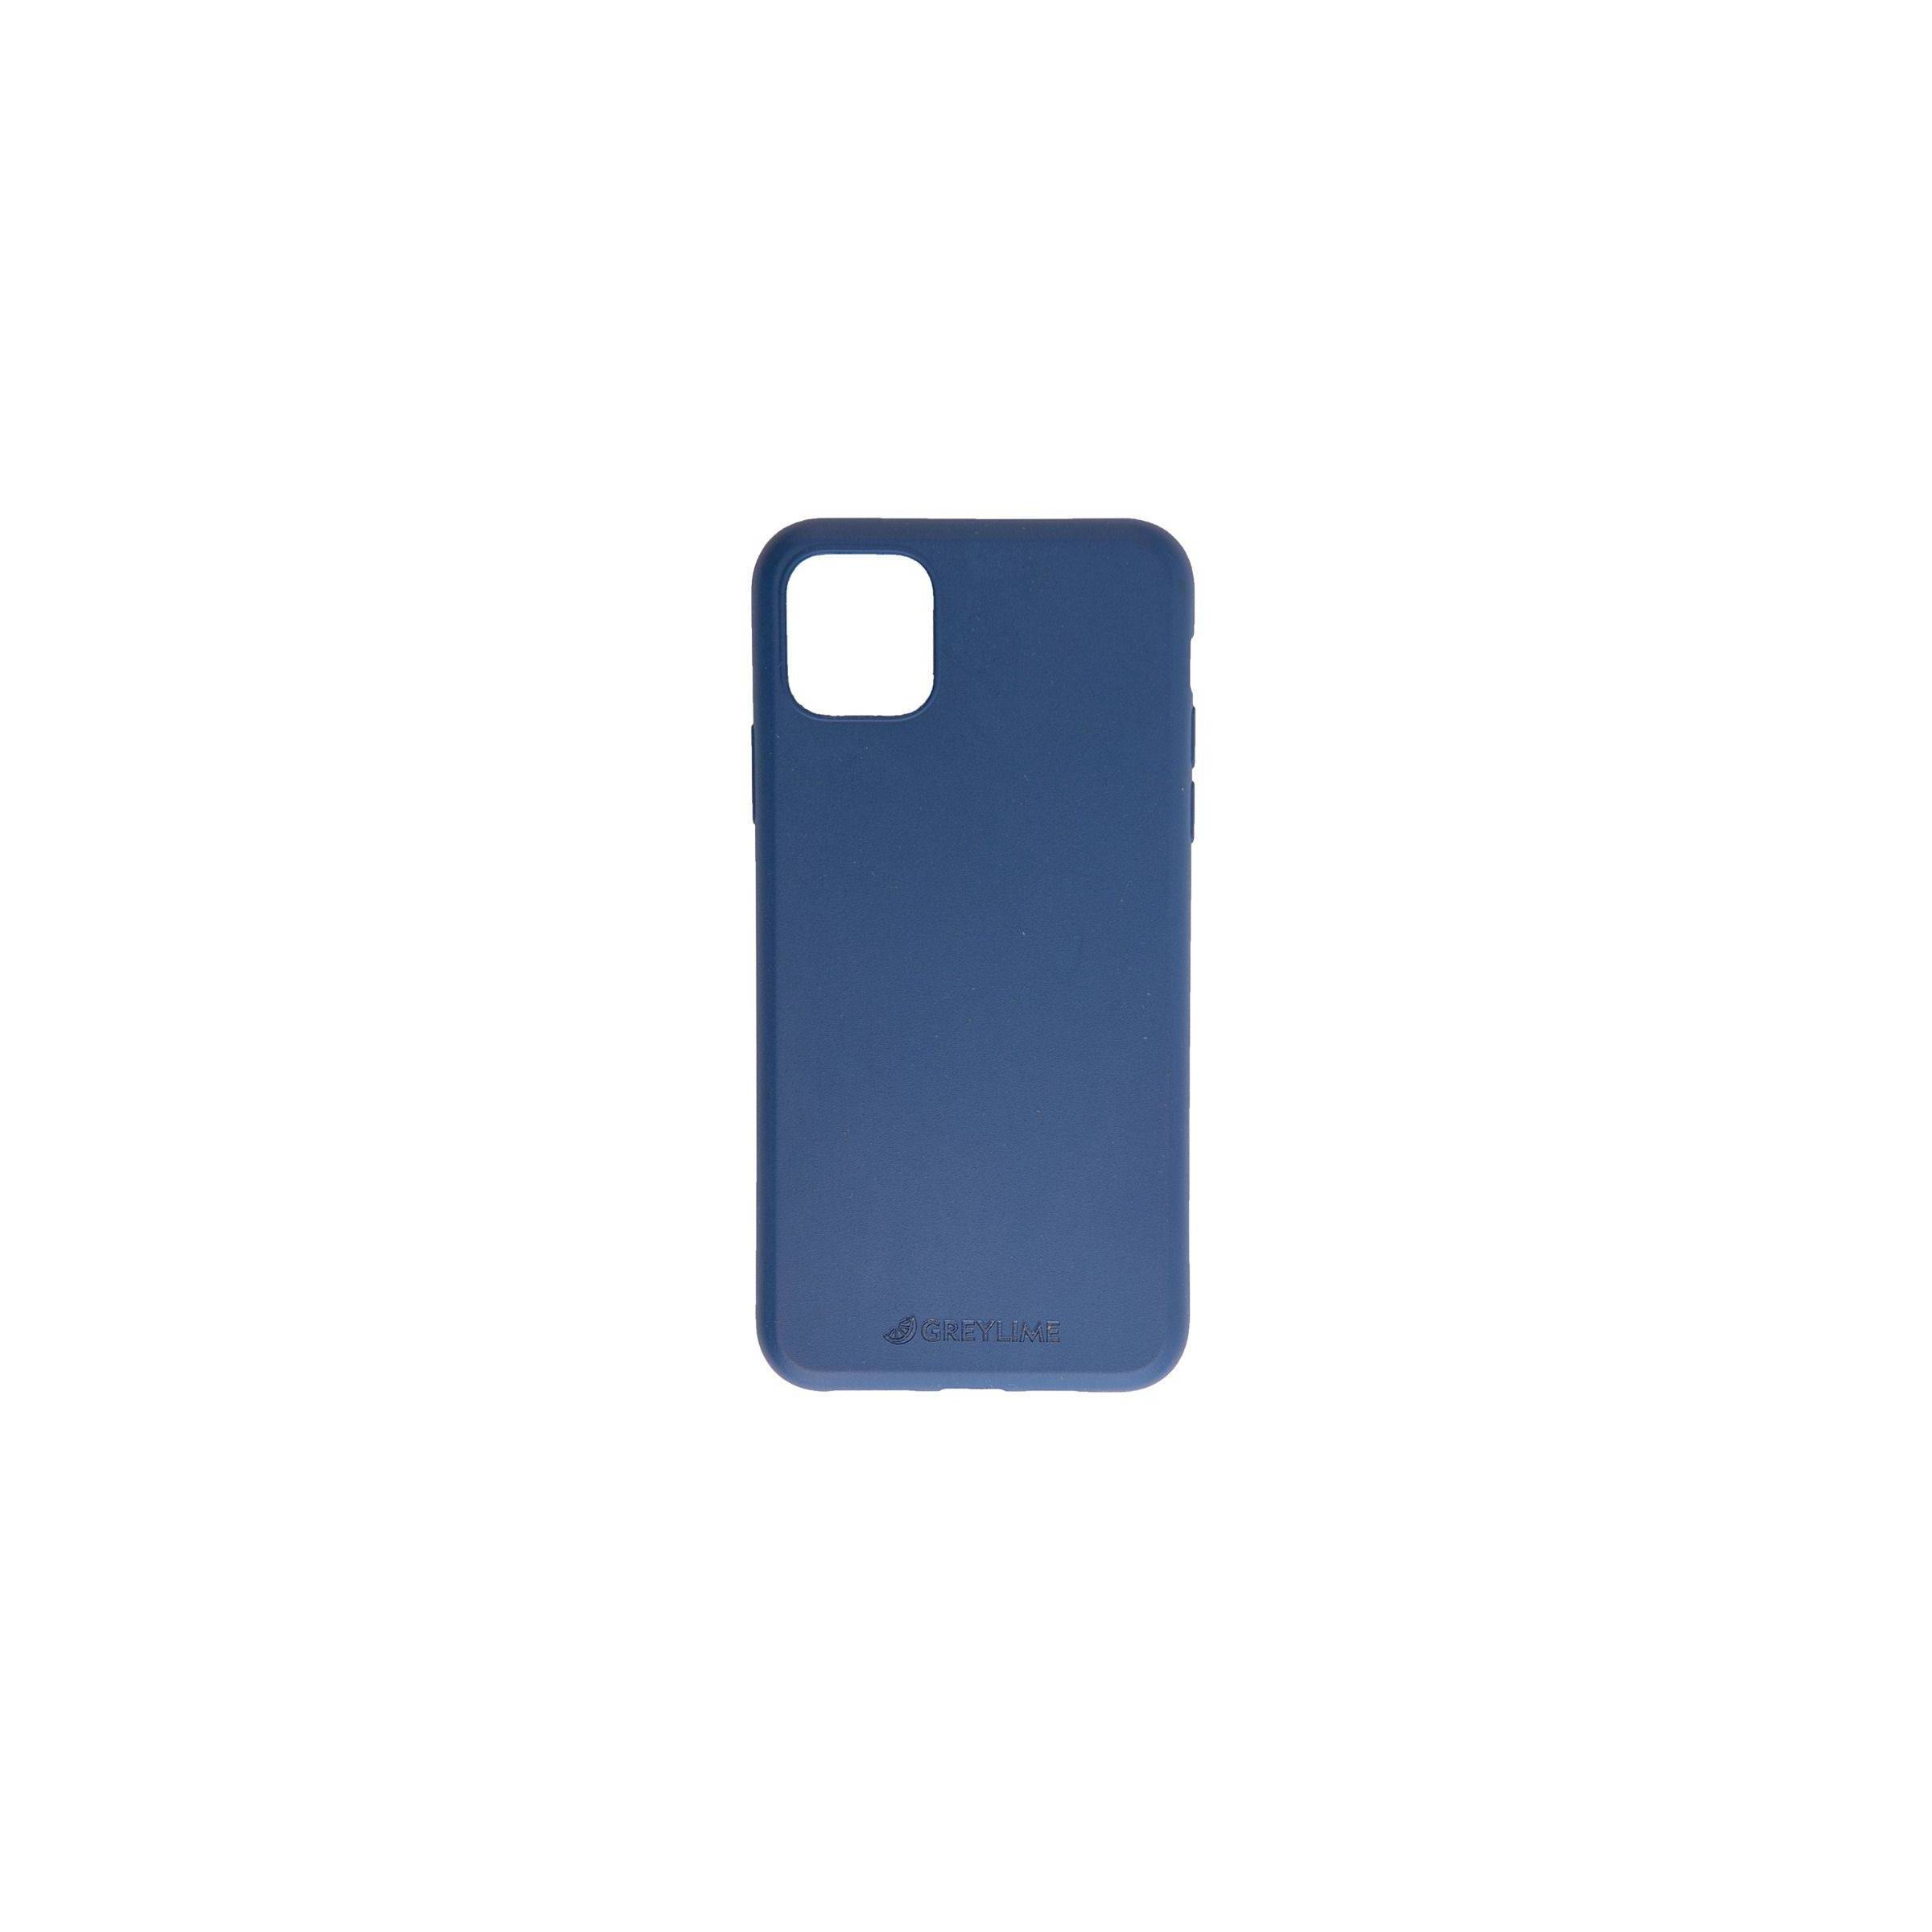 Bilde av Iphone 11 Pro Biodegradable Cover Greylime, Farge Mørke Blå